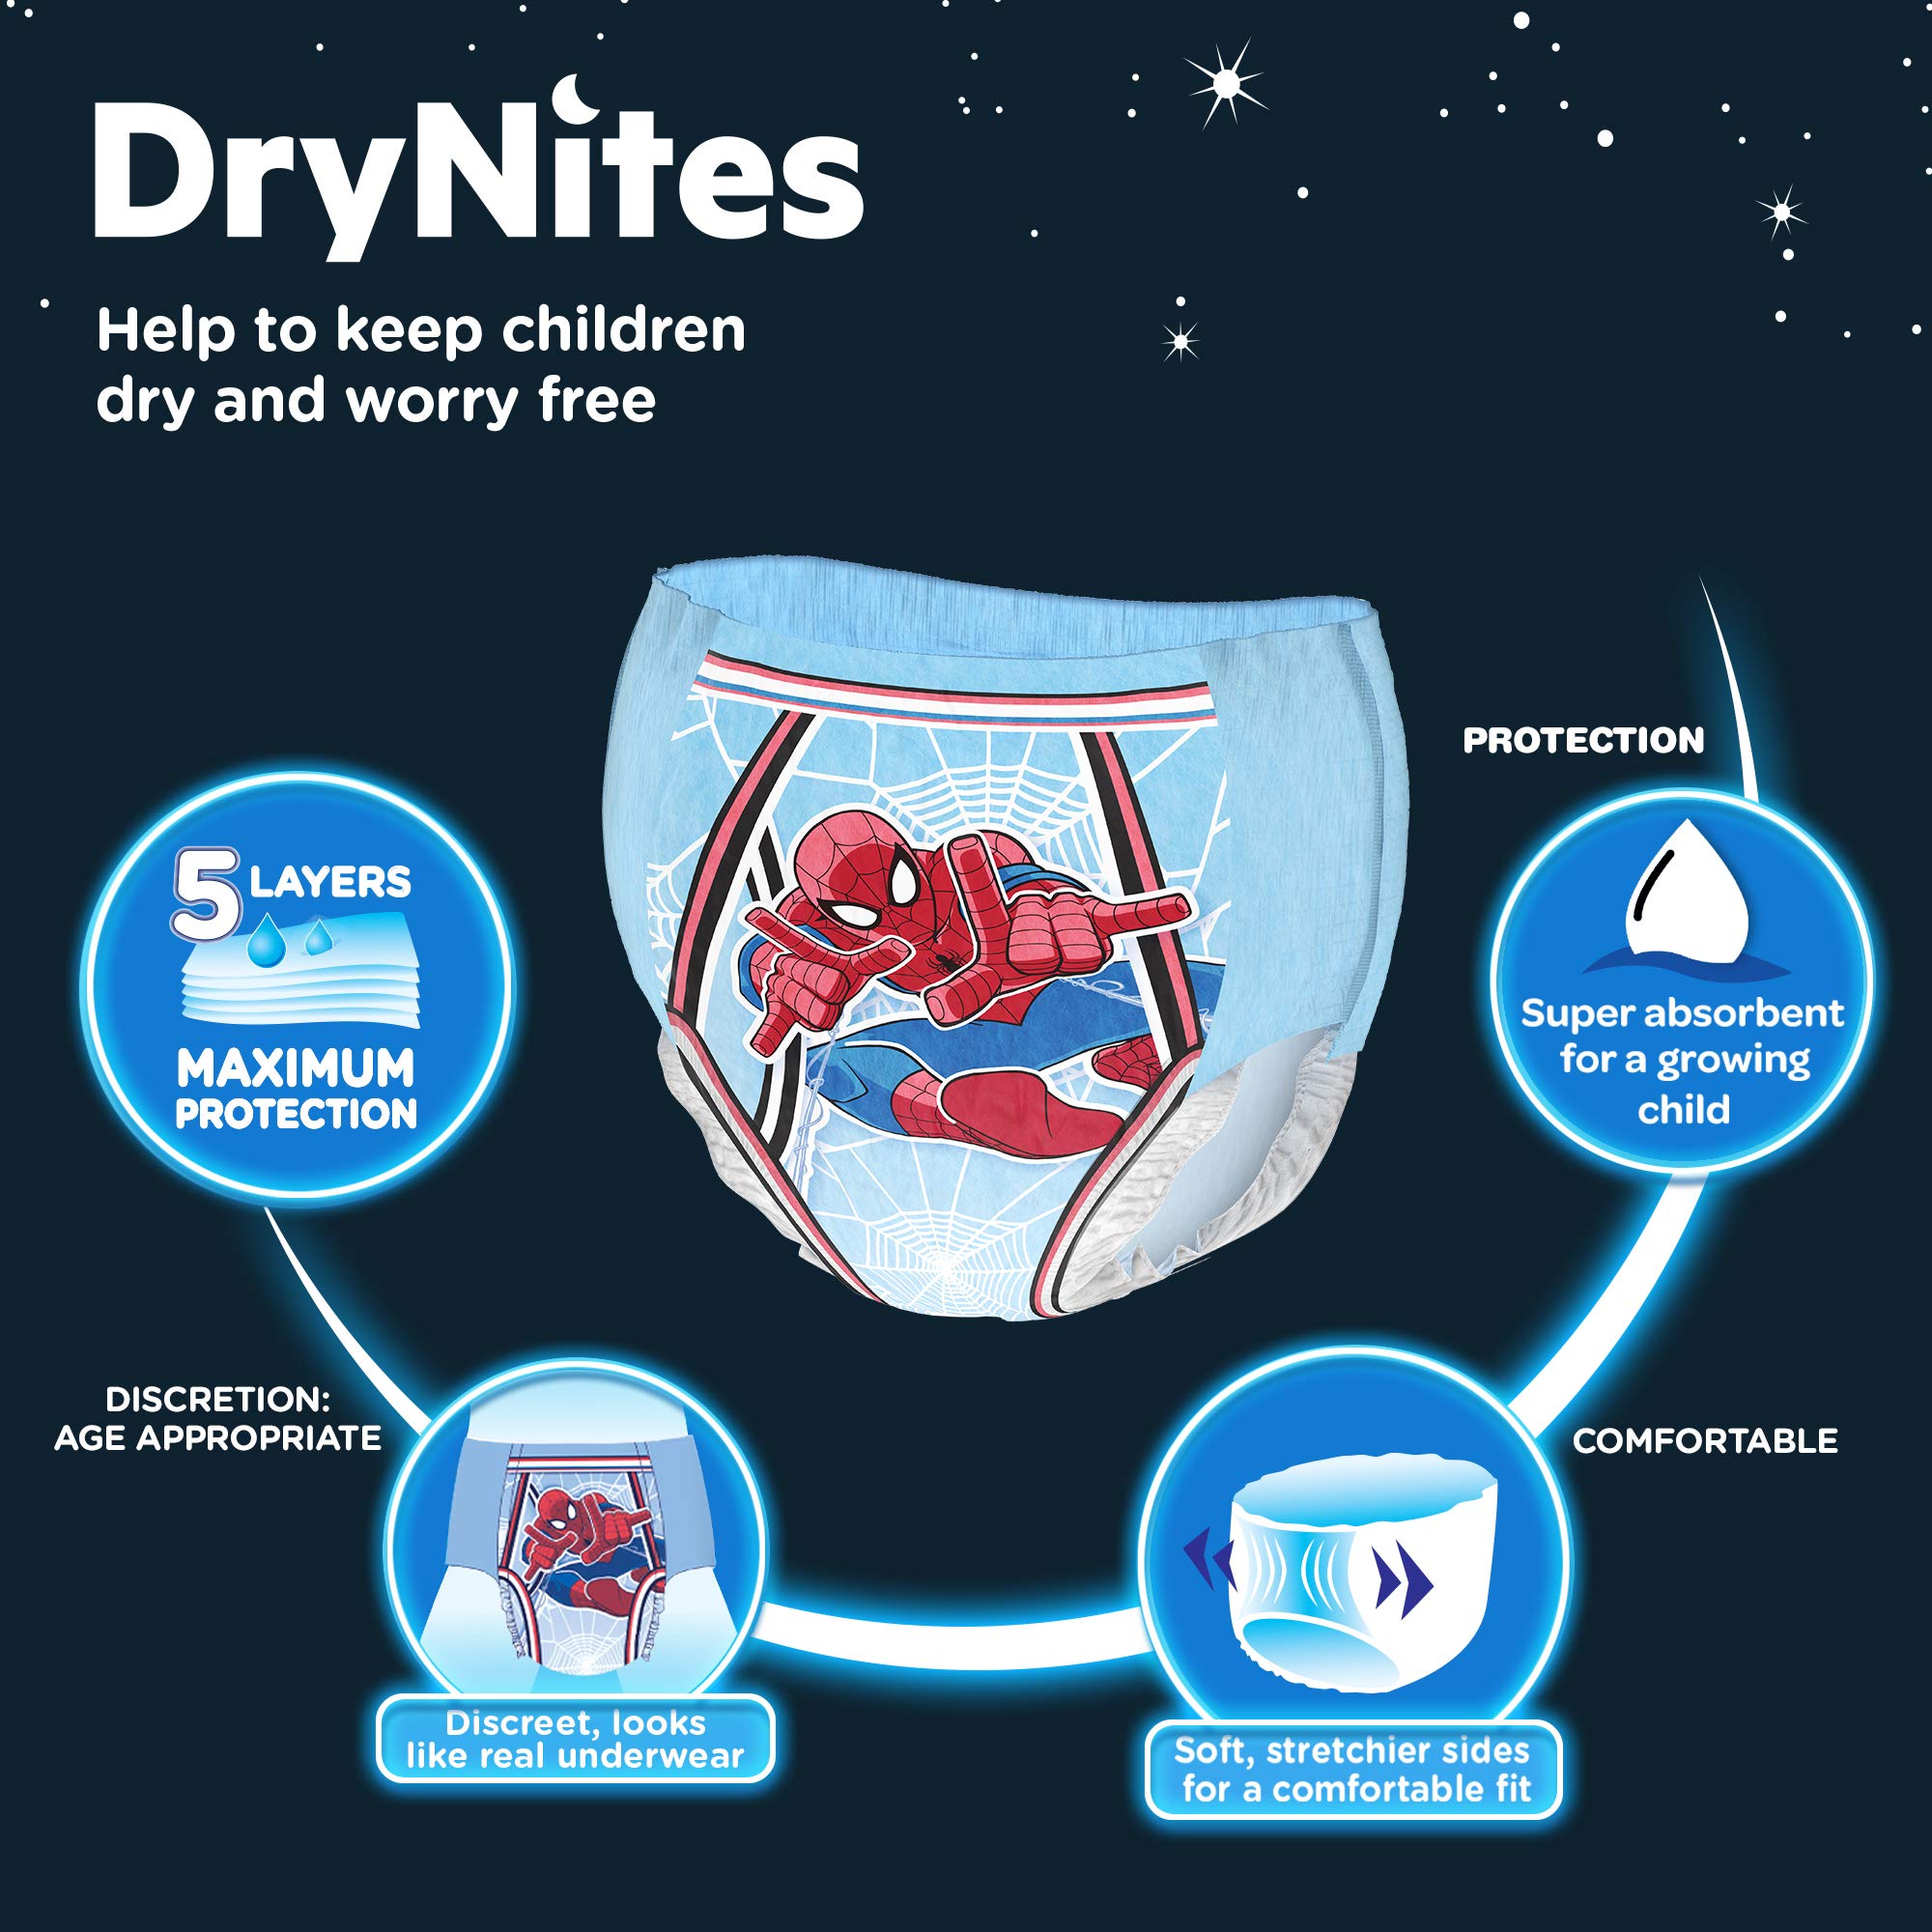 Drynites Pyjama Pants, Age 3-5 Y, Boy, 16-23 Kg, 16 Bed Wetting Pants